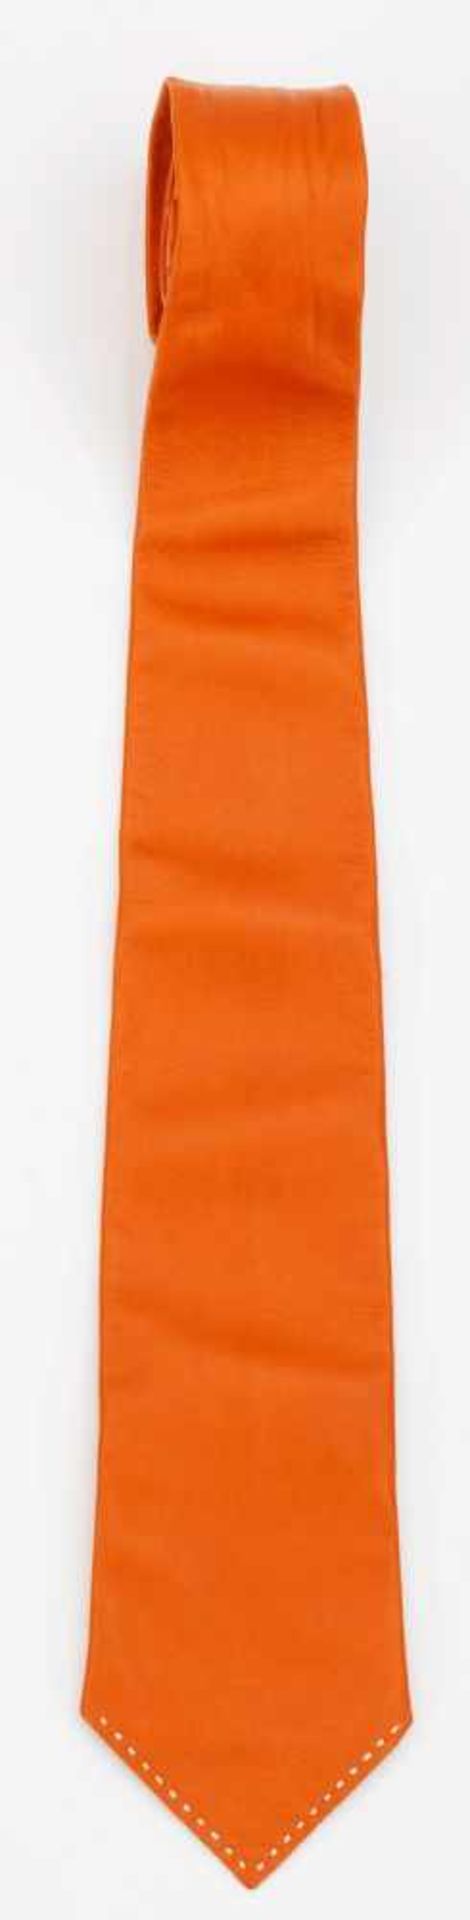 Krawatte von HERMÈSOrangefarbenes Leder mit weißer Ziernaht. Herstellerzeichen. Getragen.